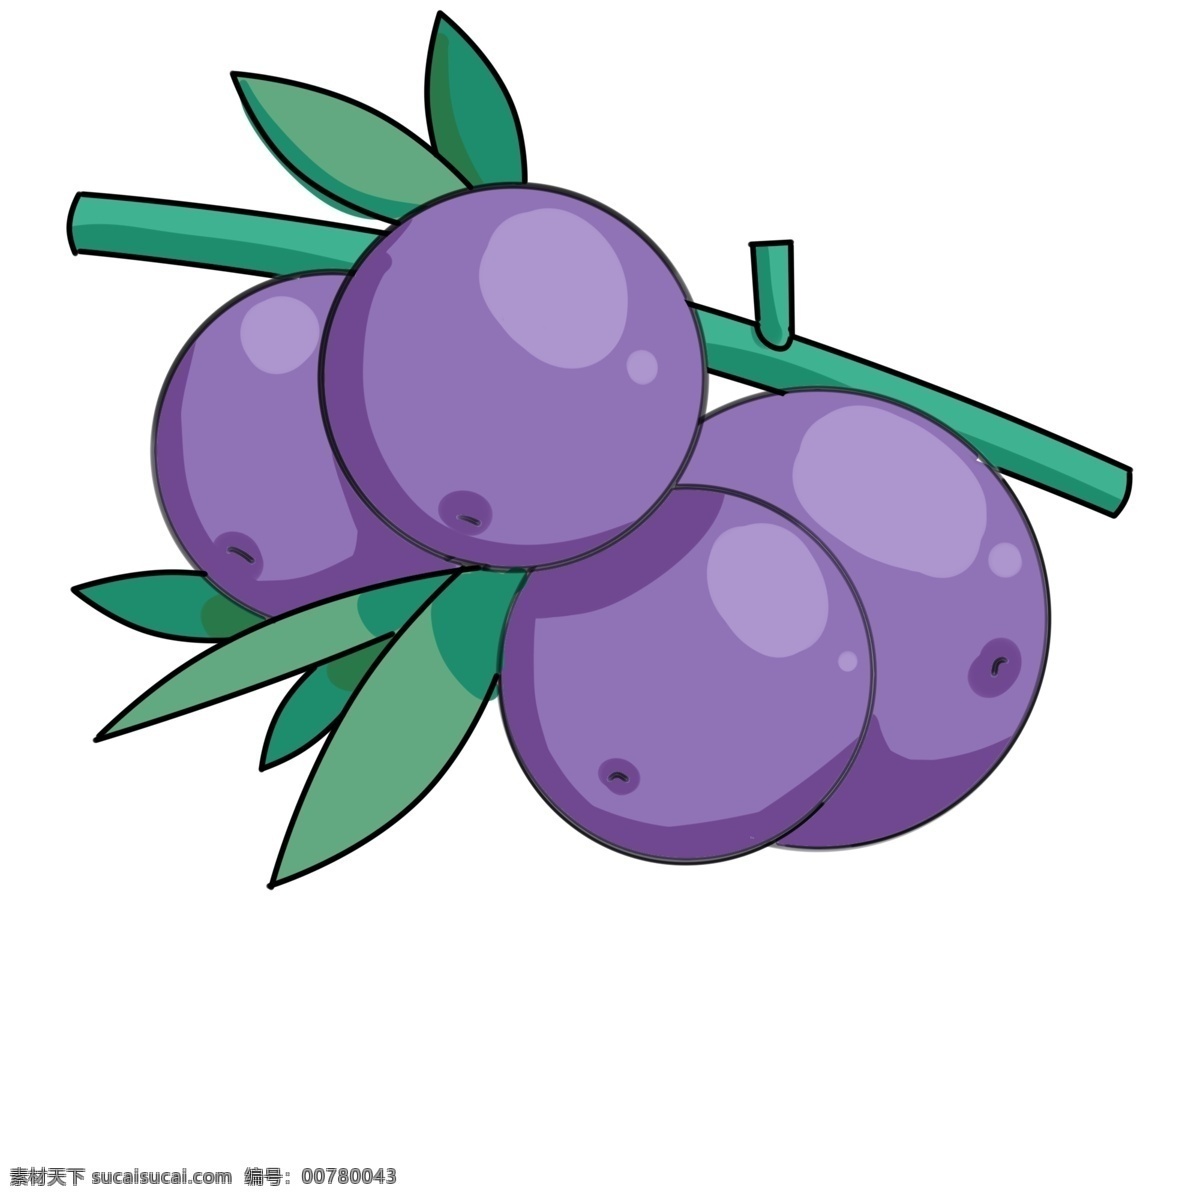 三 只 蓝莓 很 新鲜 枝头 上 三只 大叶子 一个 大蓝莓 独立枝头 油画 紫色 漂亮 文件 晕染 泼墨 叶子